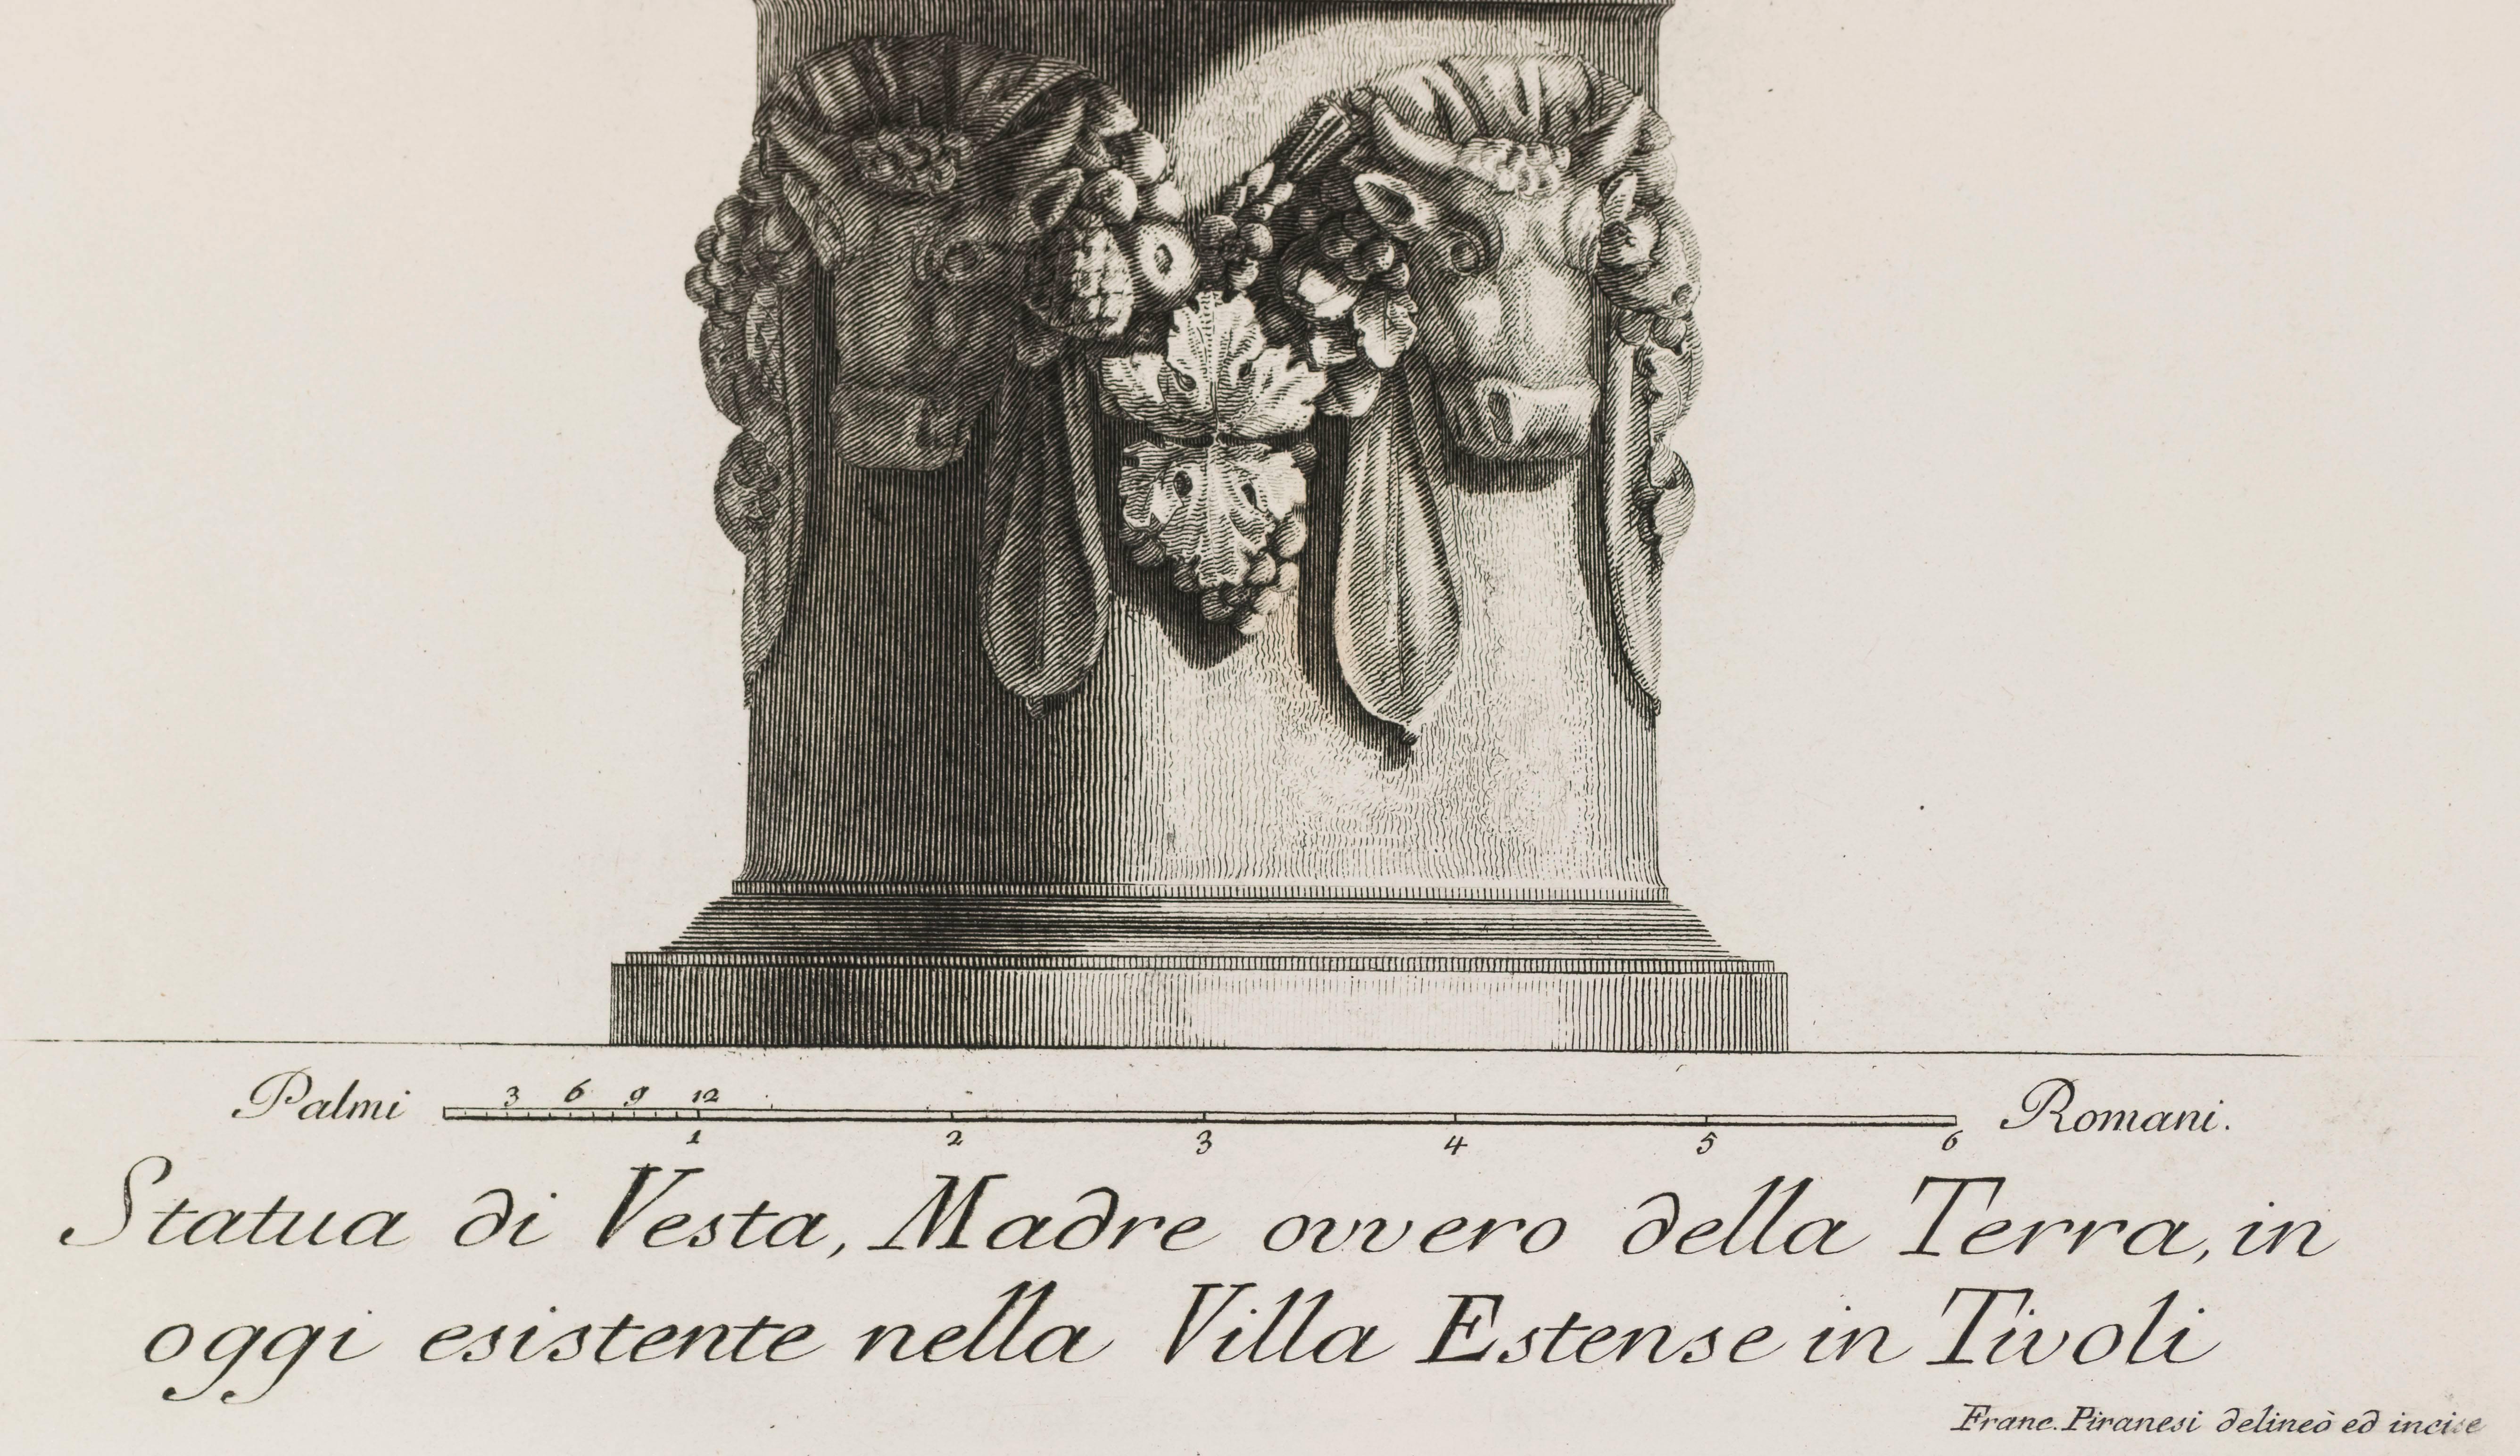 Statue of Vesta in Villa Estense in Tivoli - Print by Giovanni Battista Piranesi